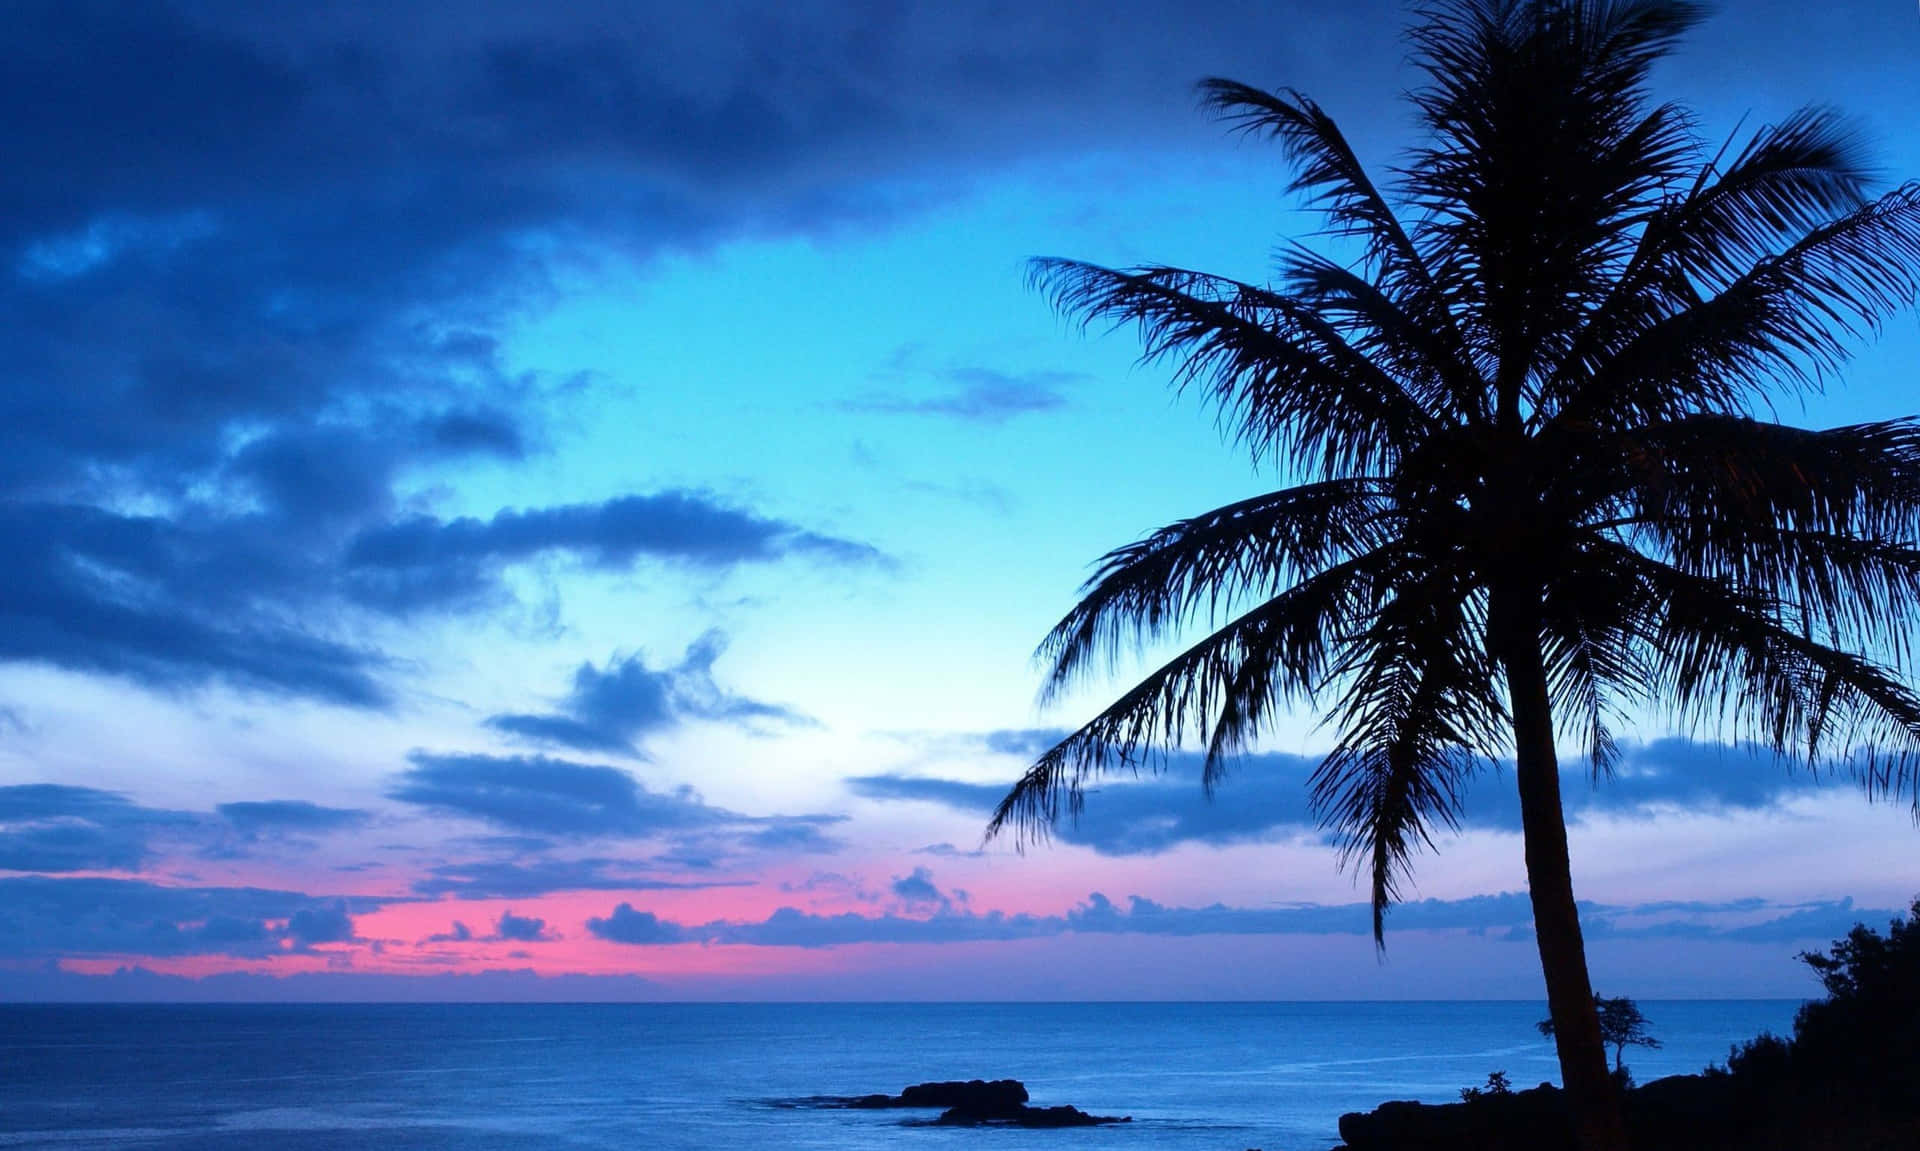 Erlebensie Die Beruhigende Und Ruhige Schönheit Dieses Blauen Und Violetten Sonnenuntergangs. Wallpaper